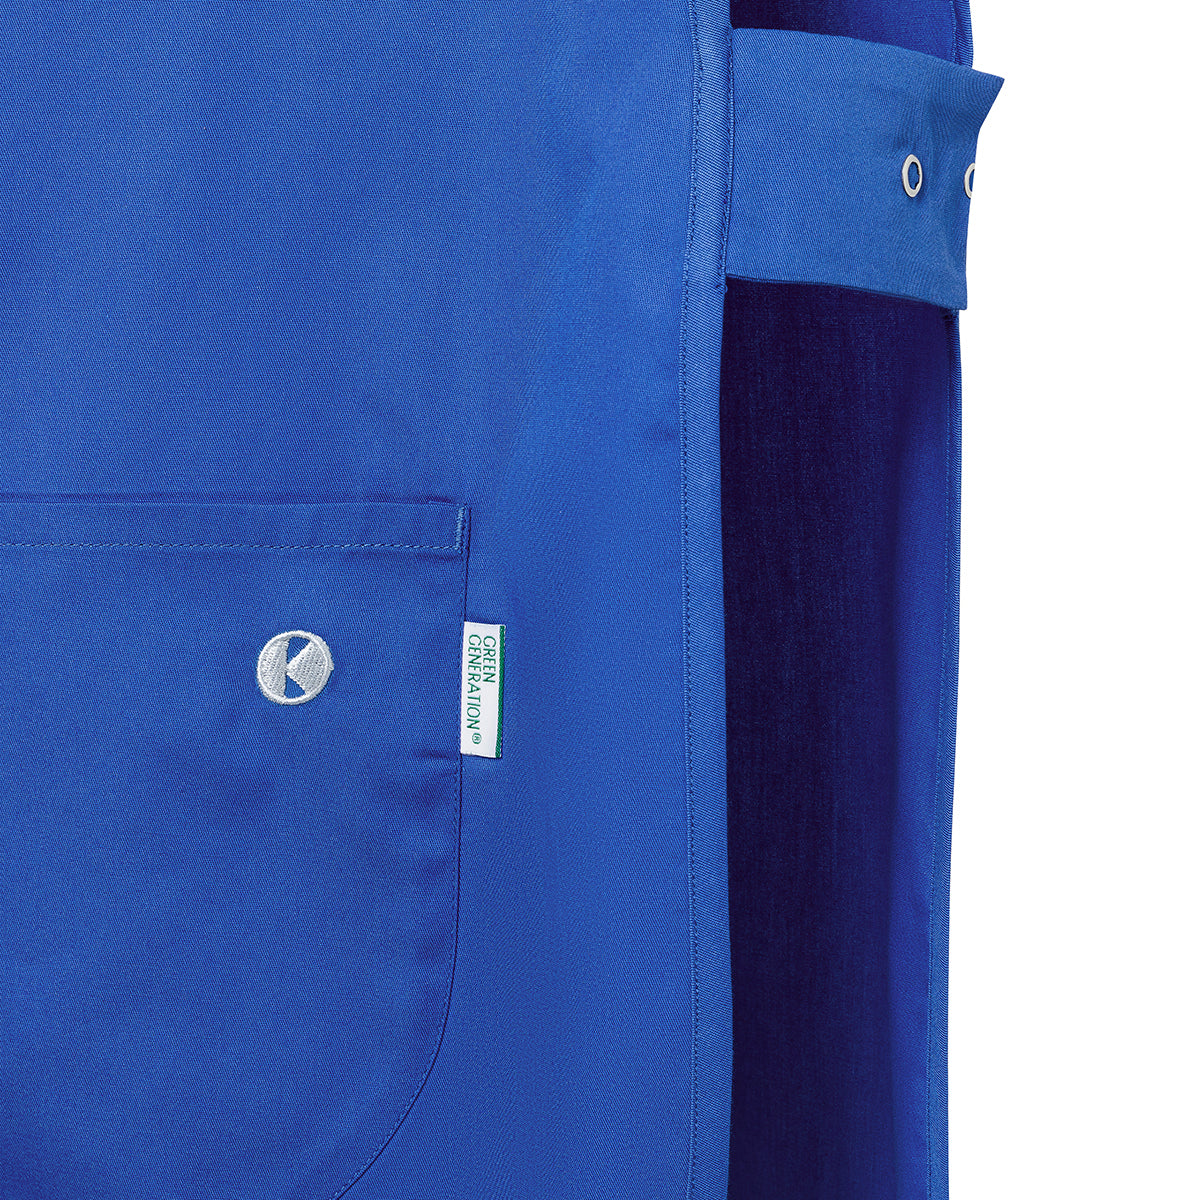 (6 stk.) Karlowsky - Throw Over Jacket Essential - Royal Blue - Størrelse: M